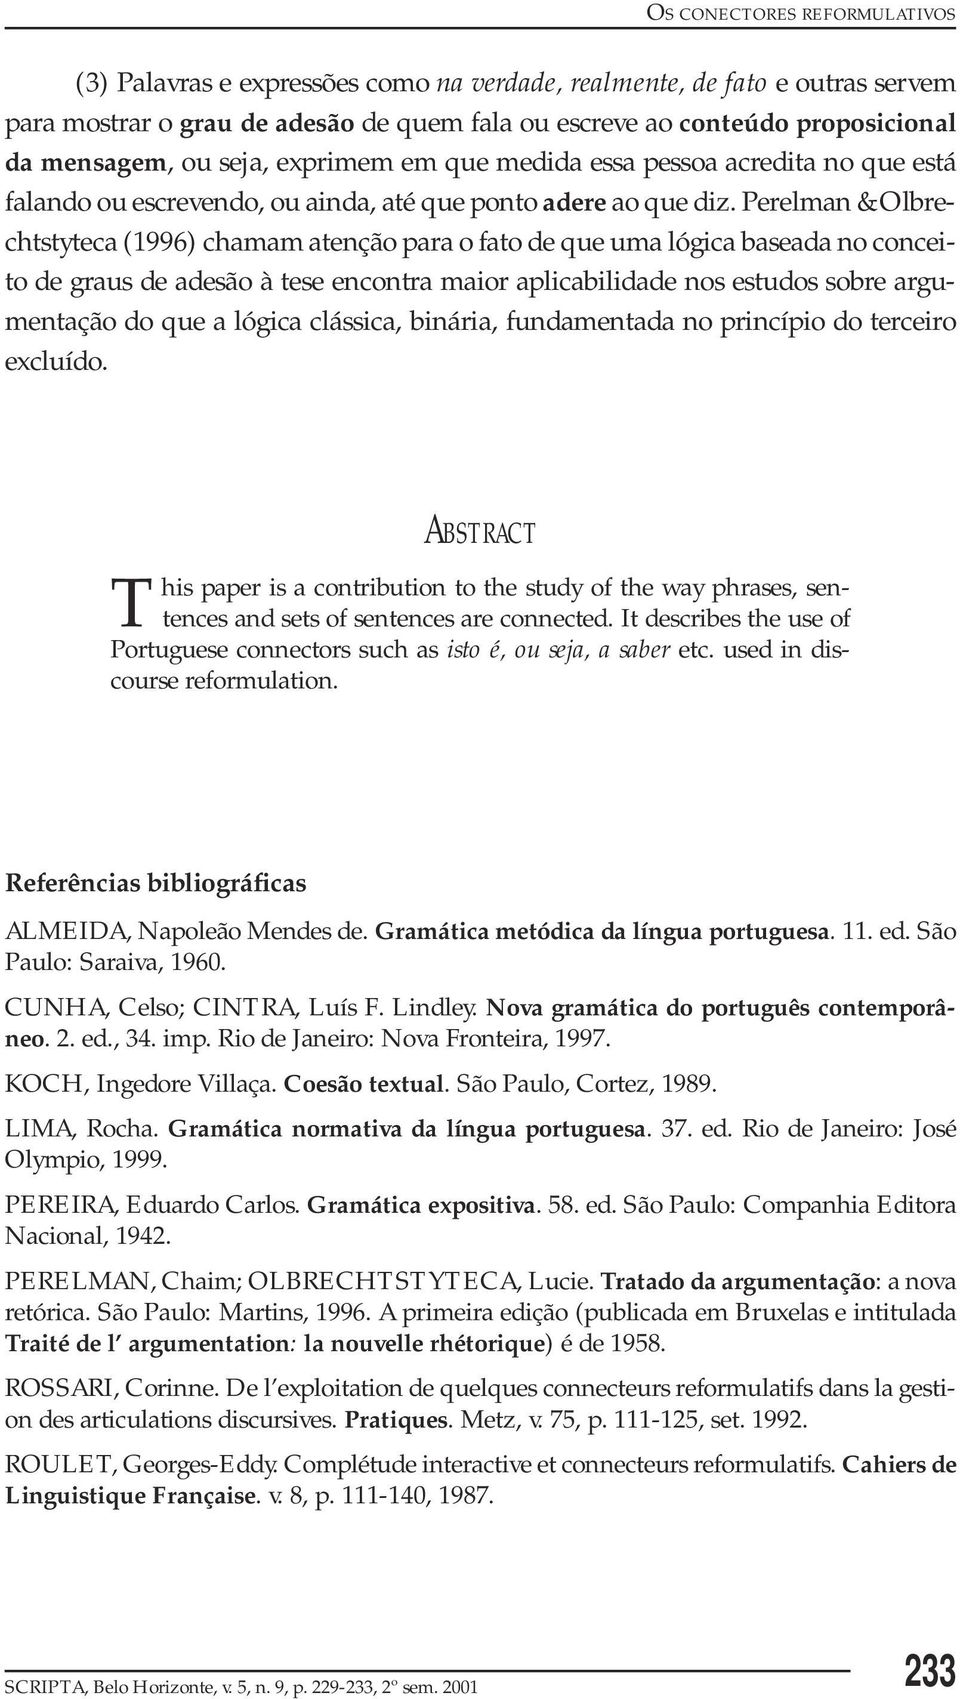 Perelman & Olbrechtstyteca (1996) chamam atenção para o fato de que uma lógica baseada no conceito de graus de adesão à tese encontra maior aplicabilidade nos estudos sobre argumentação do que a